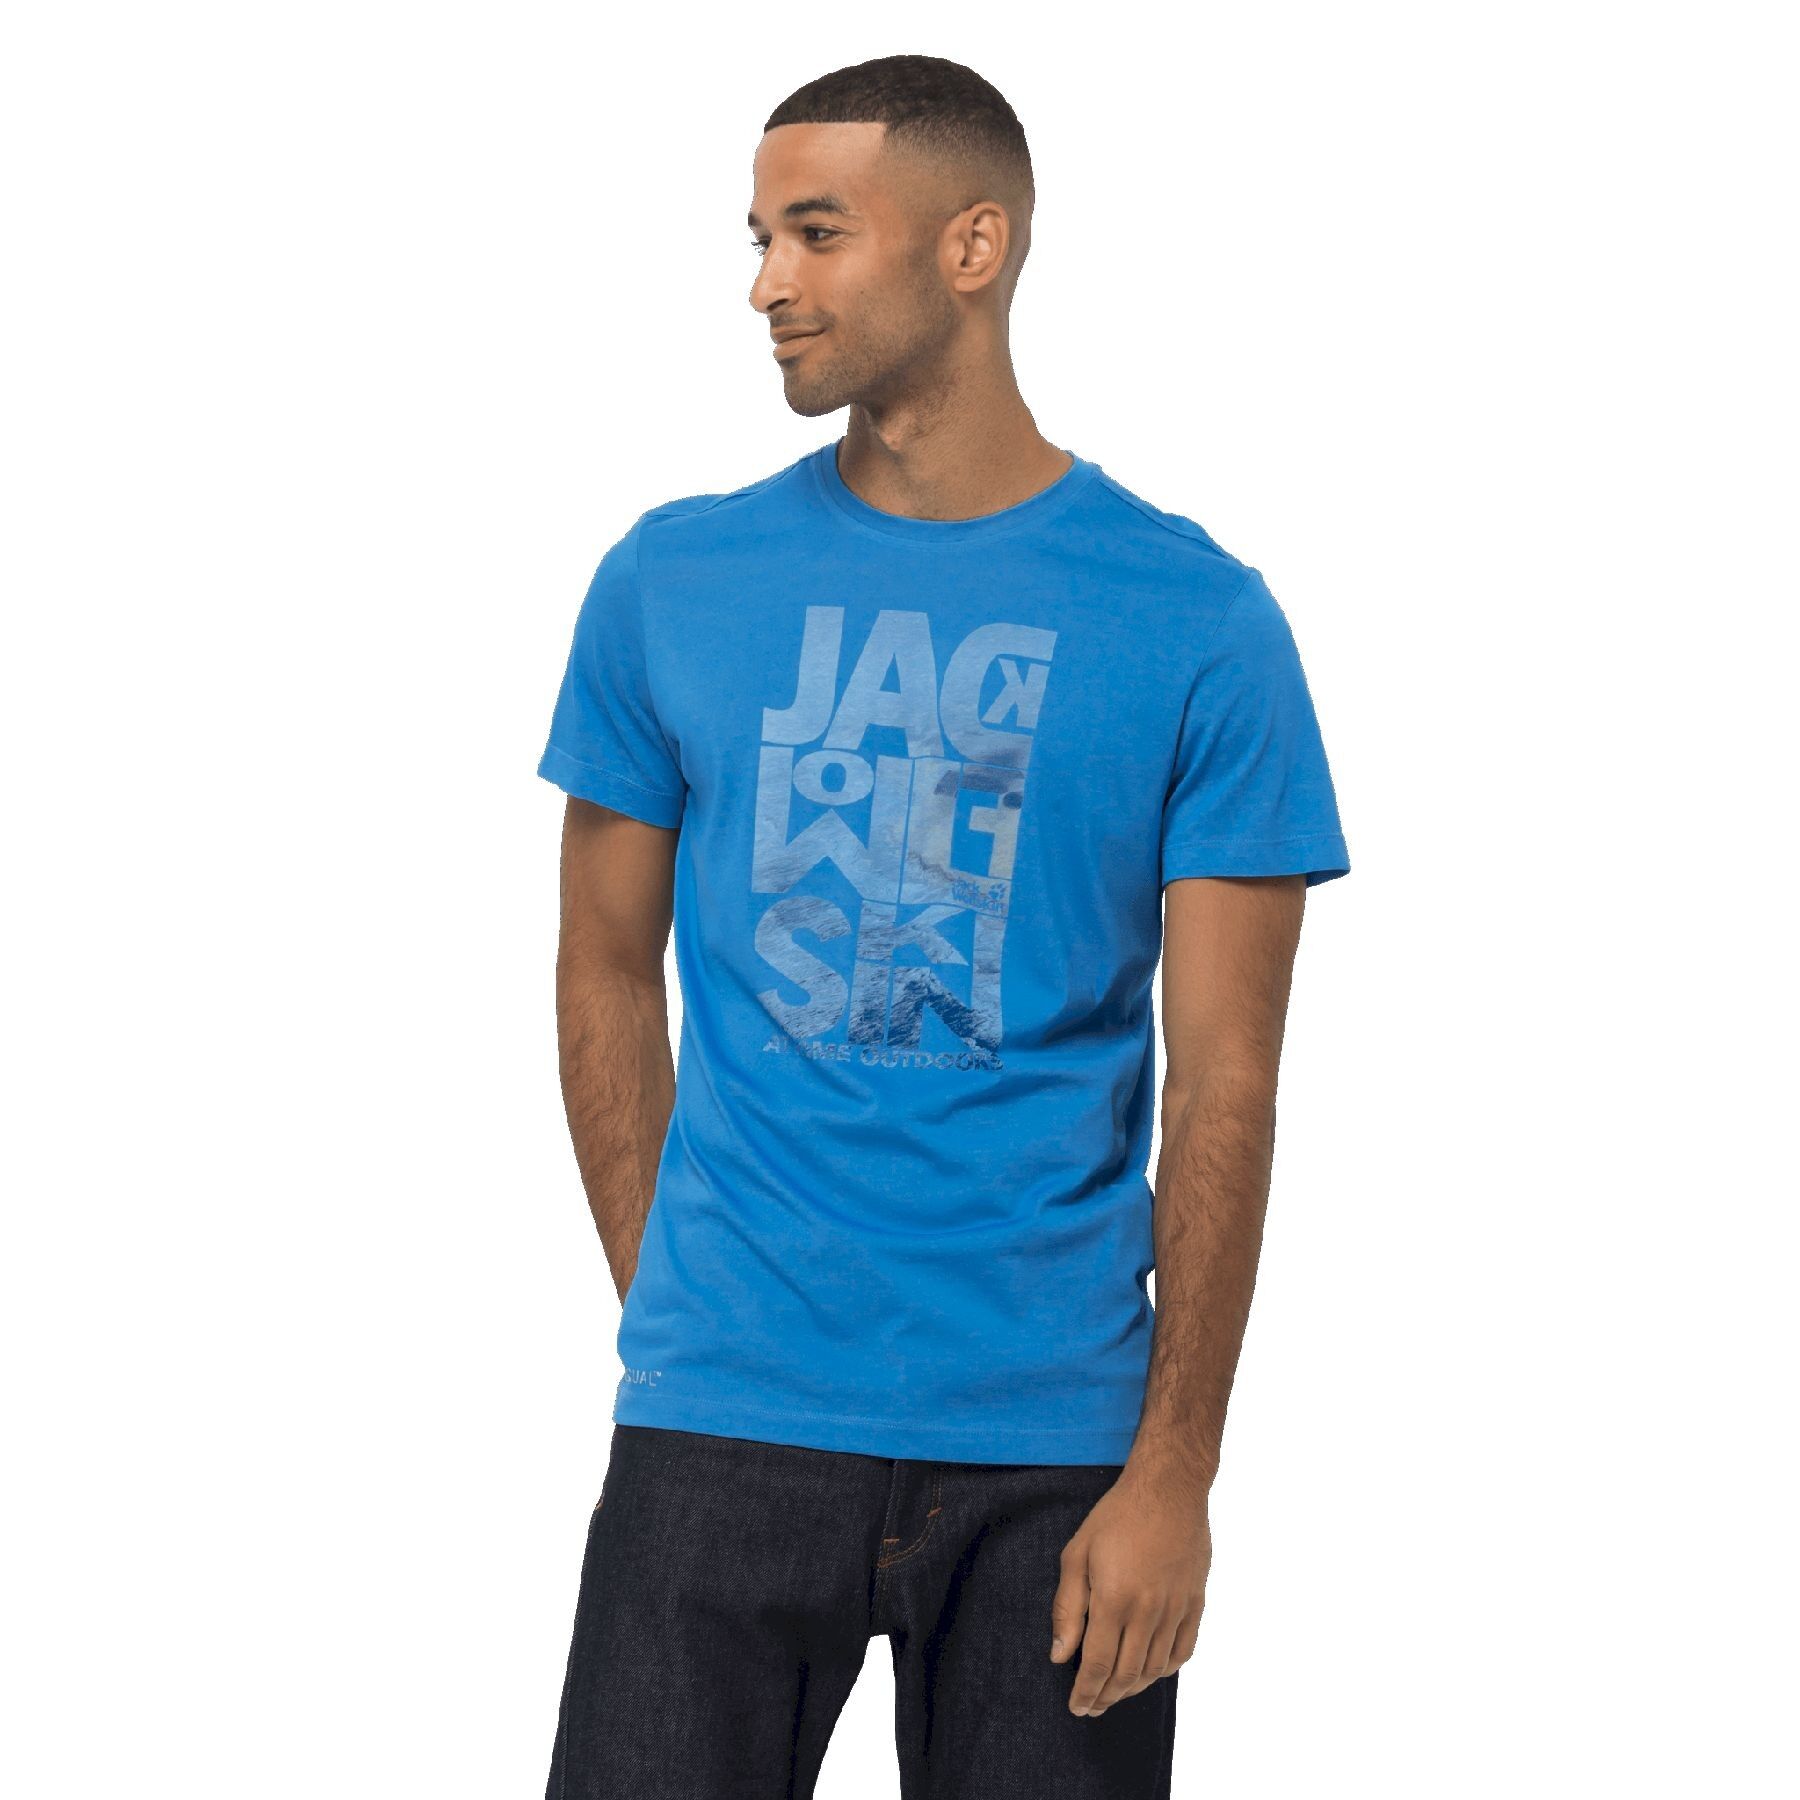 Jack Wolfskin Atlantic Ocean T - T-shirt Herrer